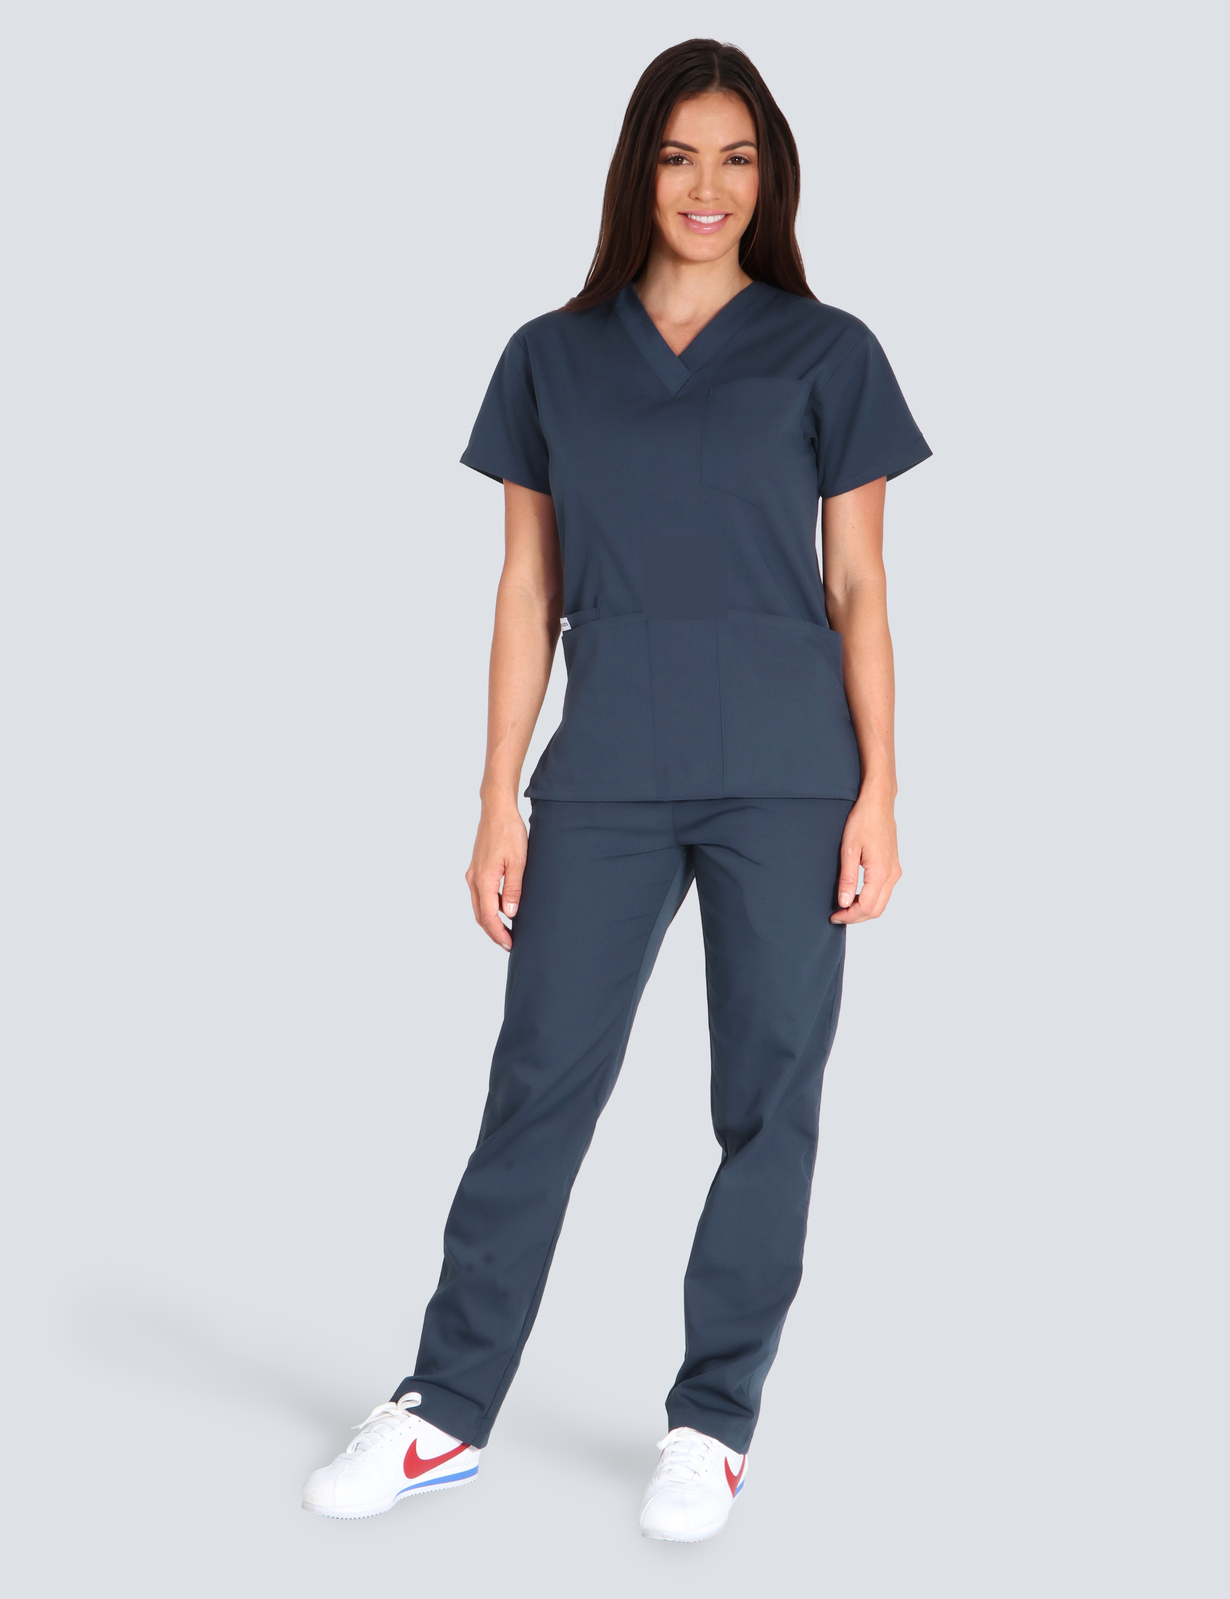 St Vincent's Hospital Emergency Department Nurse Practitioner Uniform Set Bundle (4 Pocket Top and Regular Pants in Navy incl Logo)